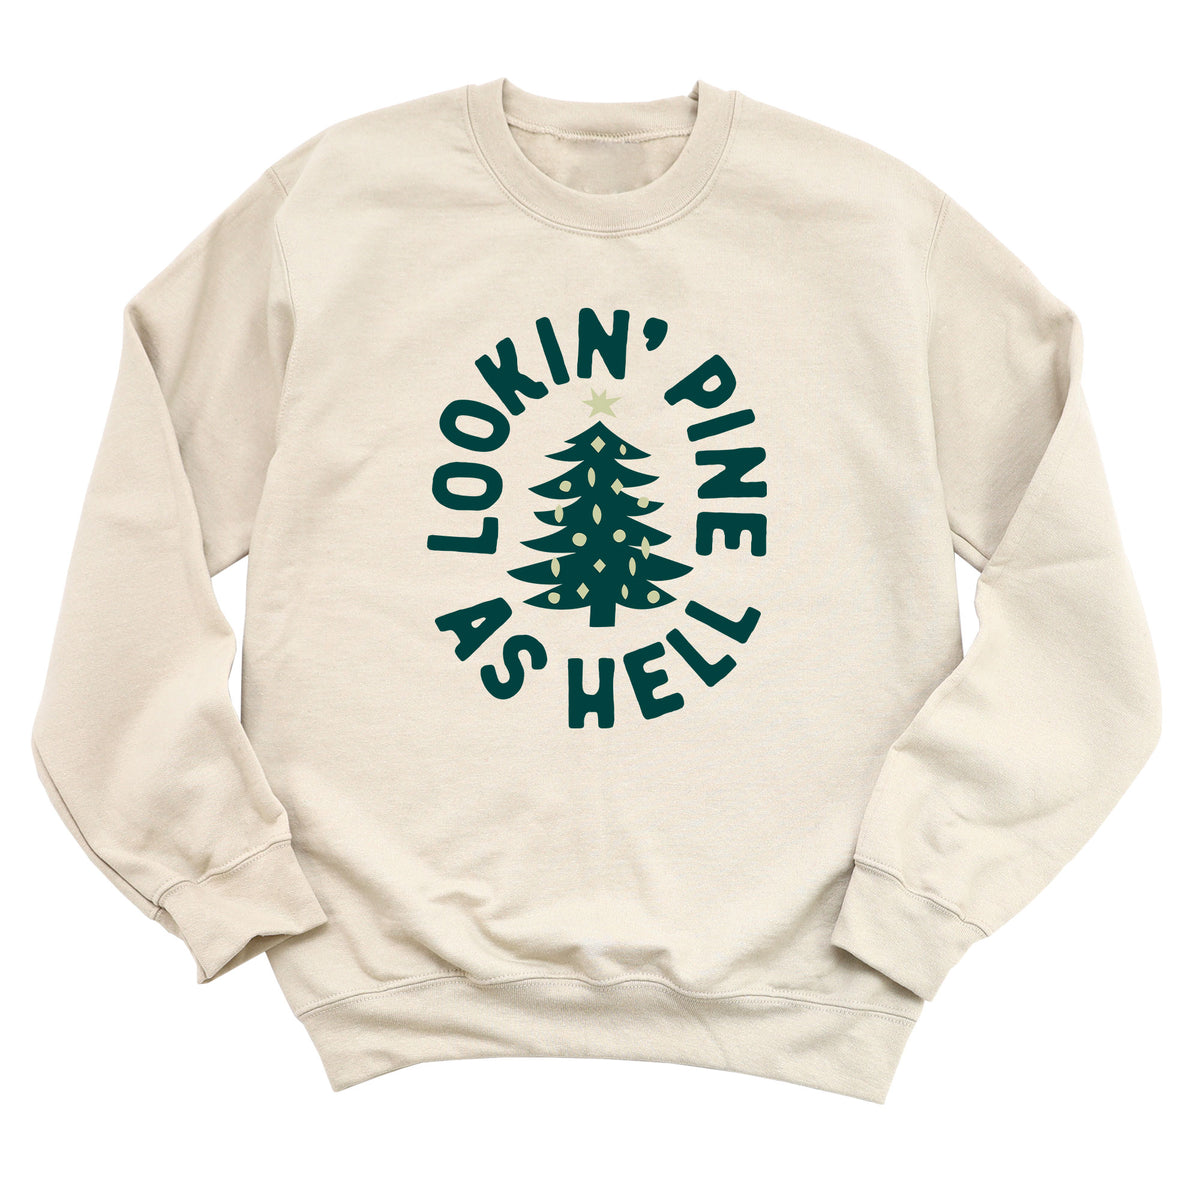 Lookin' Pine As Hell Sweatshirt